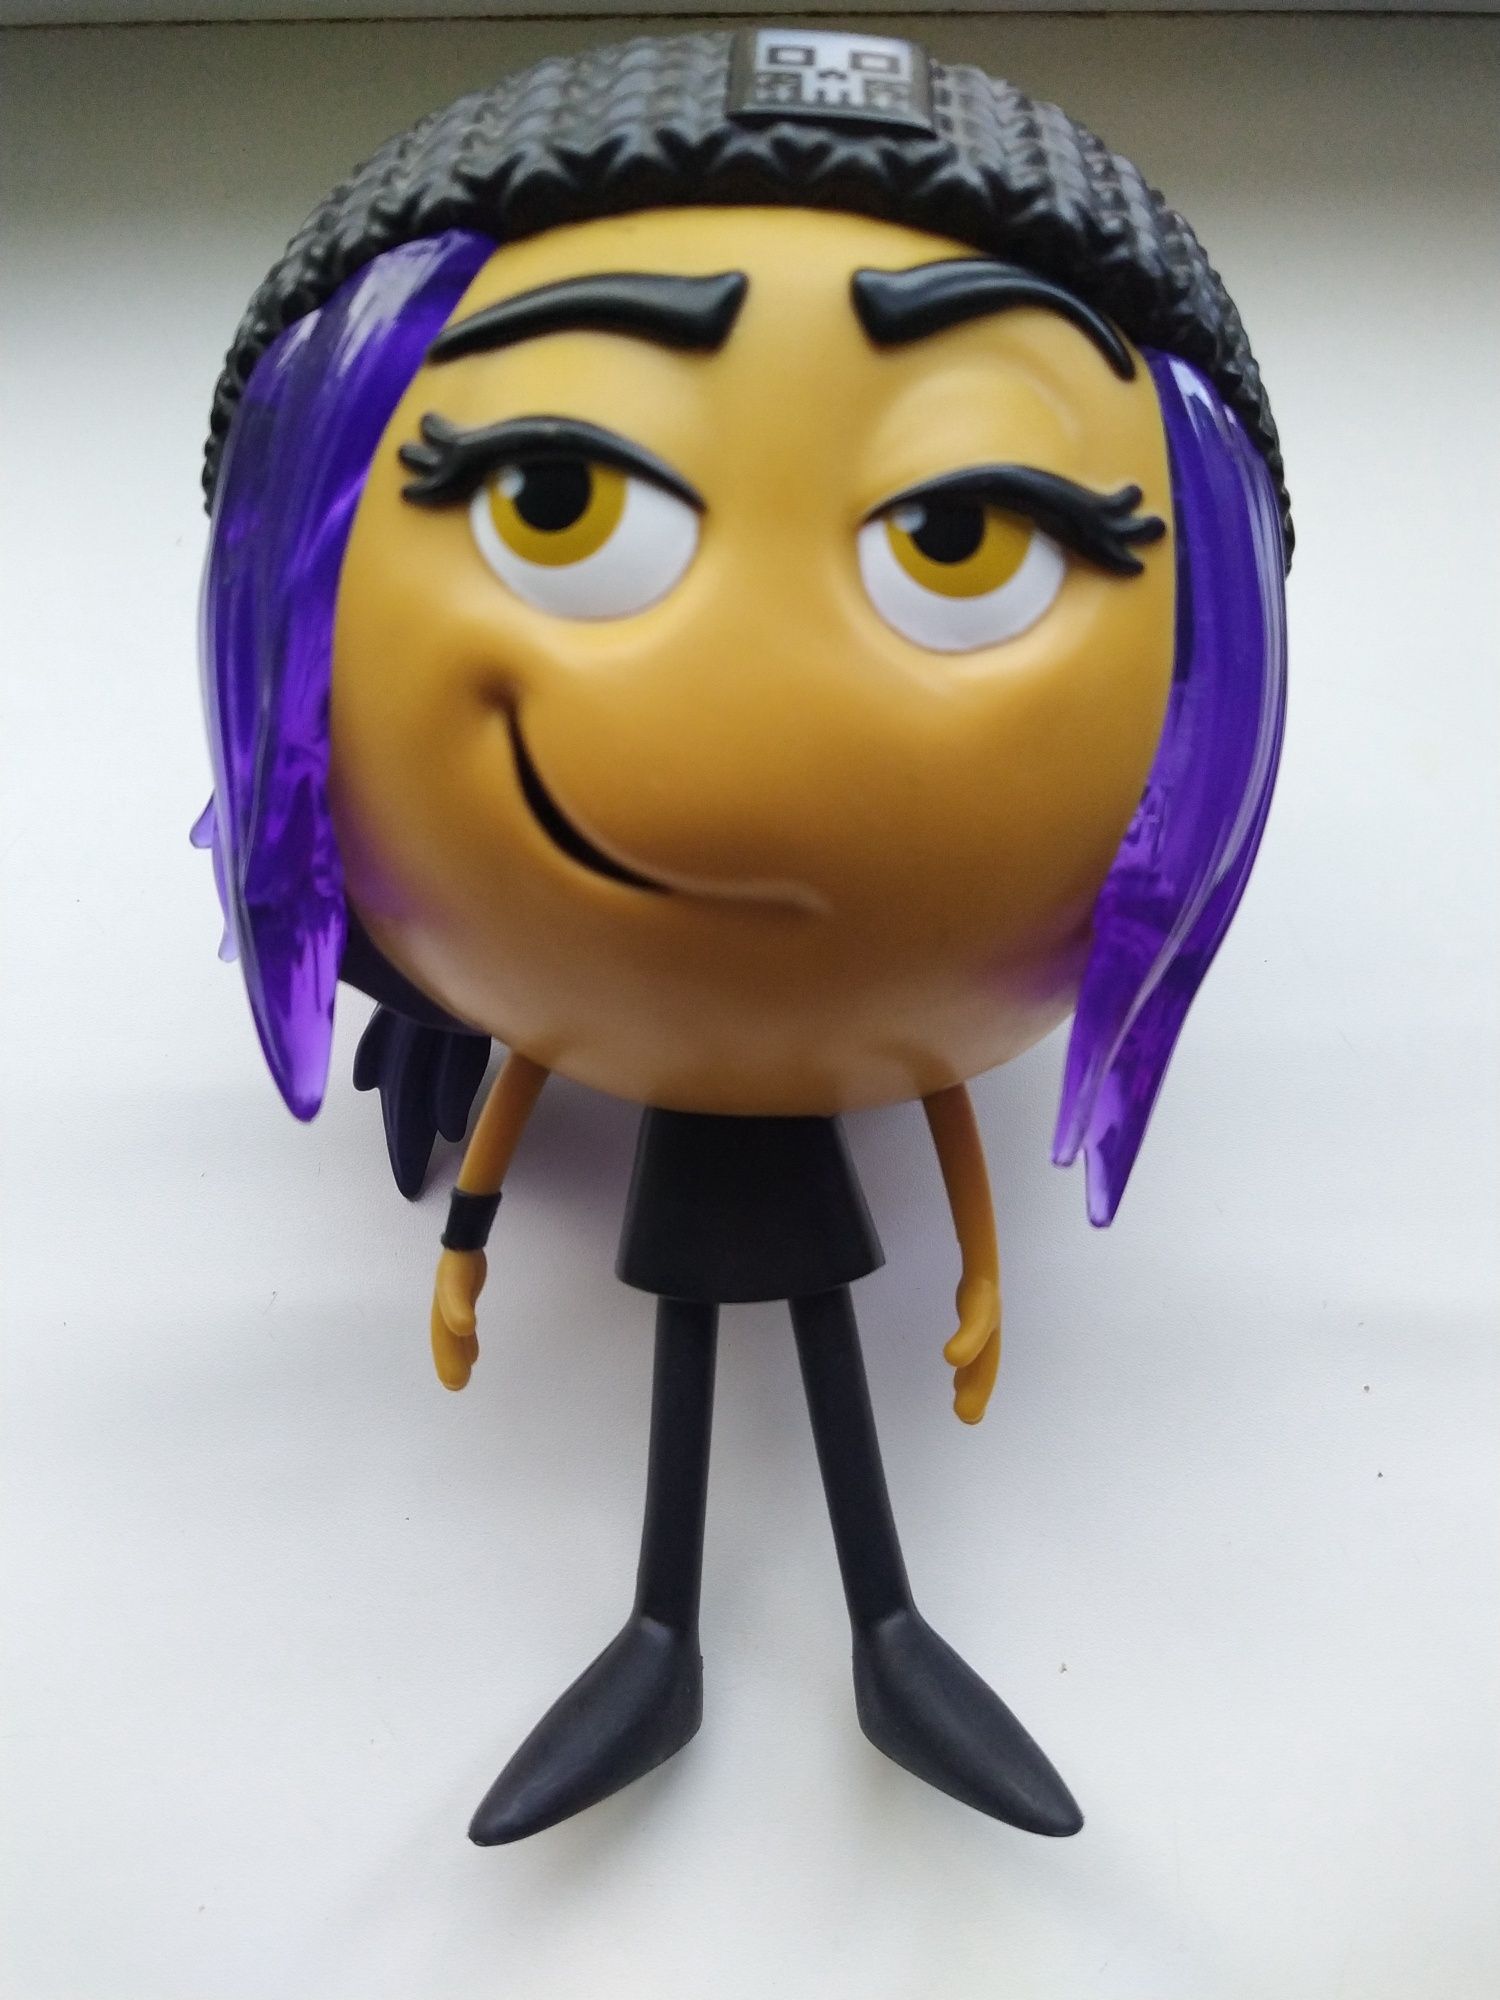 Іграшка з відомого мультфільму "Эмоджи Муві" Взломщица / The Emoji Mov